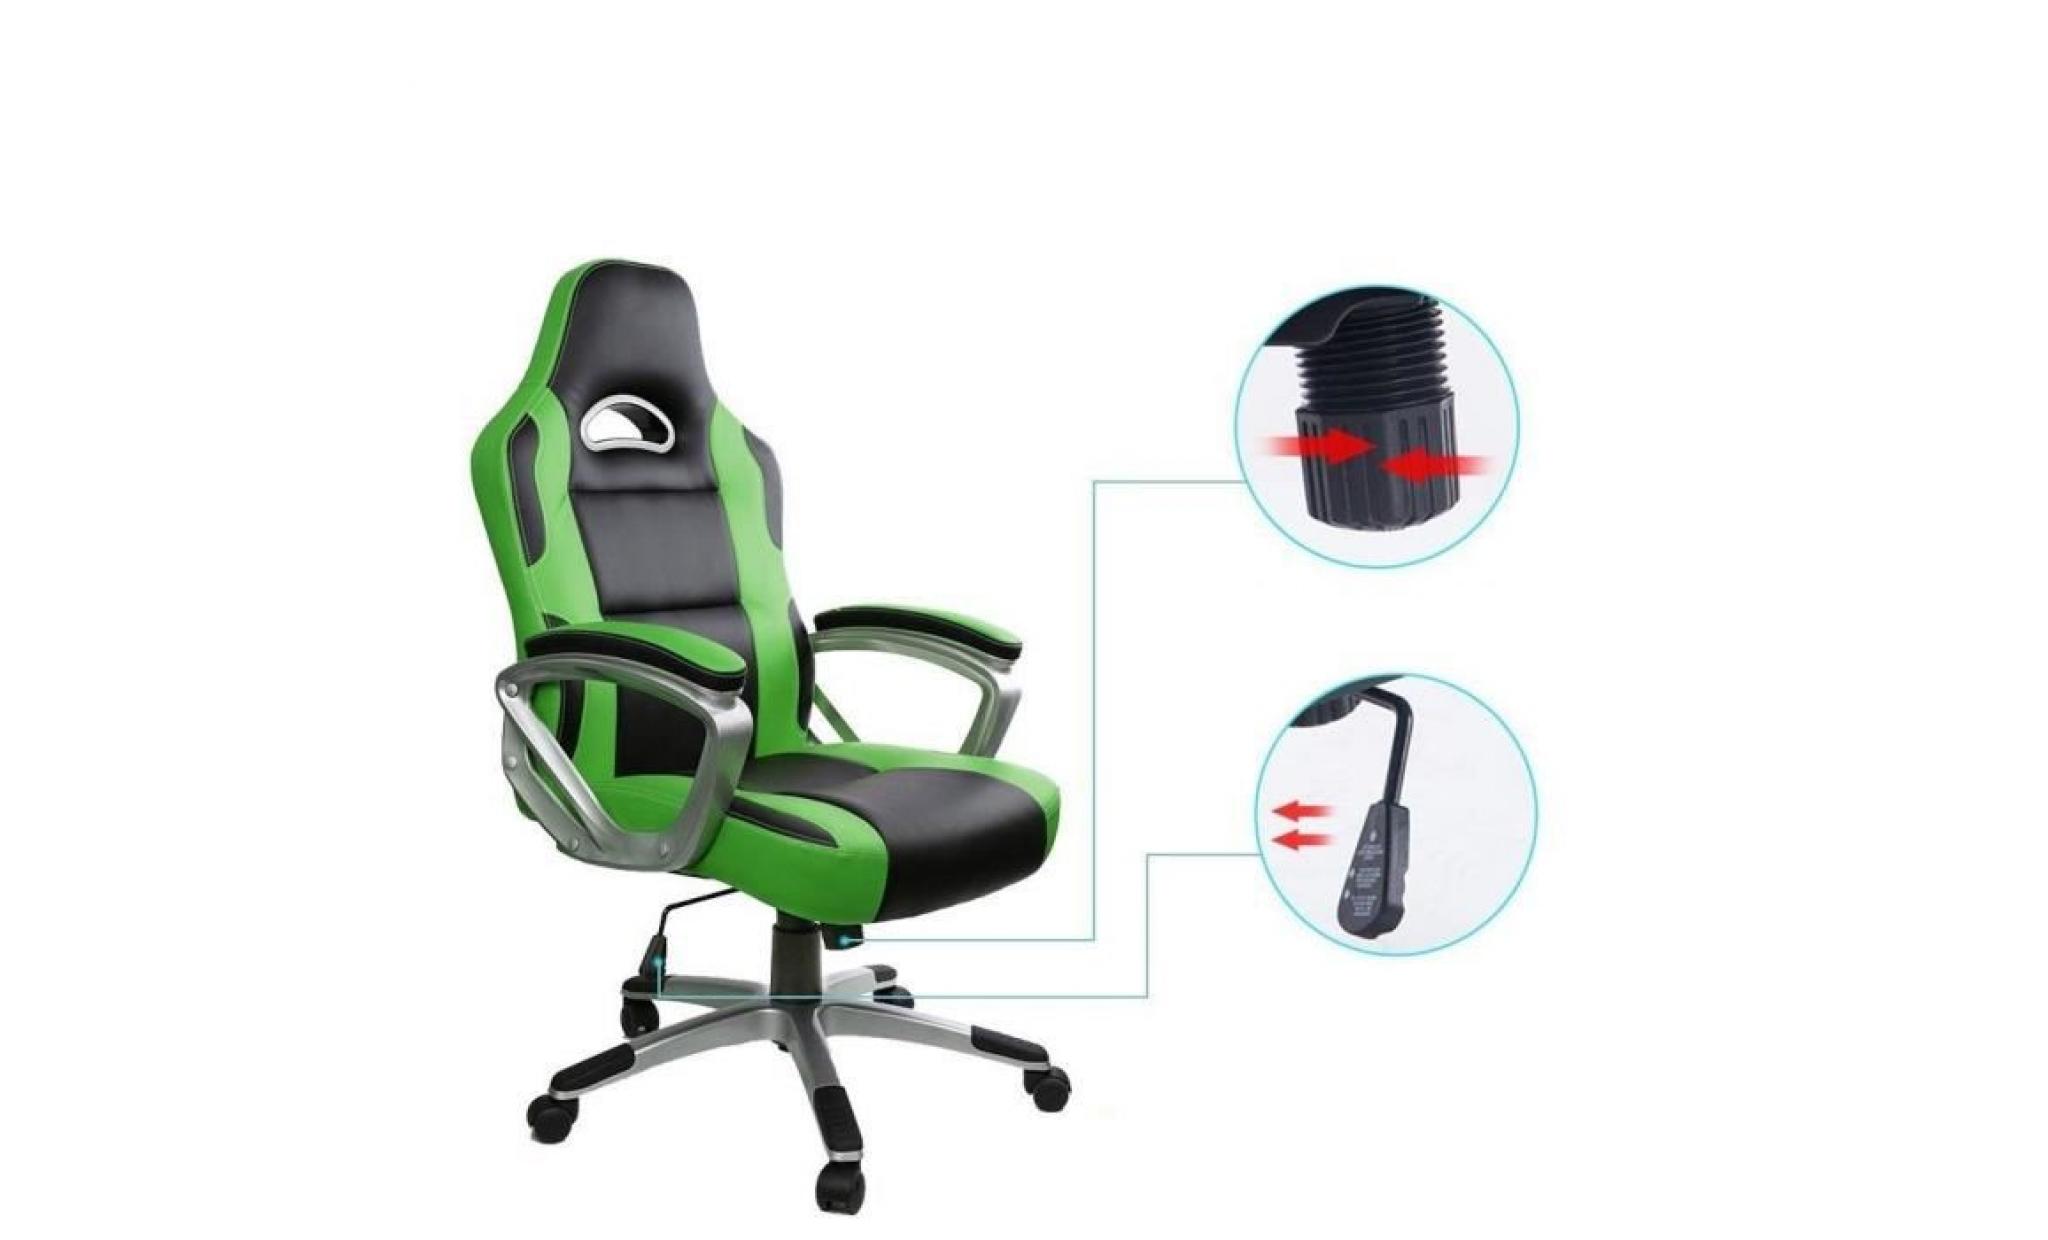 racing chaise de bureau pu   gaming chaise   fauteuil de bureau   hauteur réglable   vert   intimate wm heat pas cher